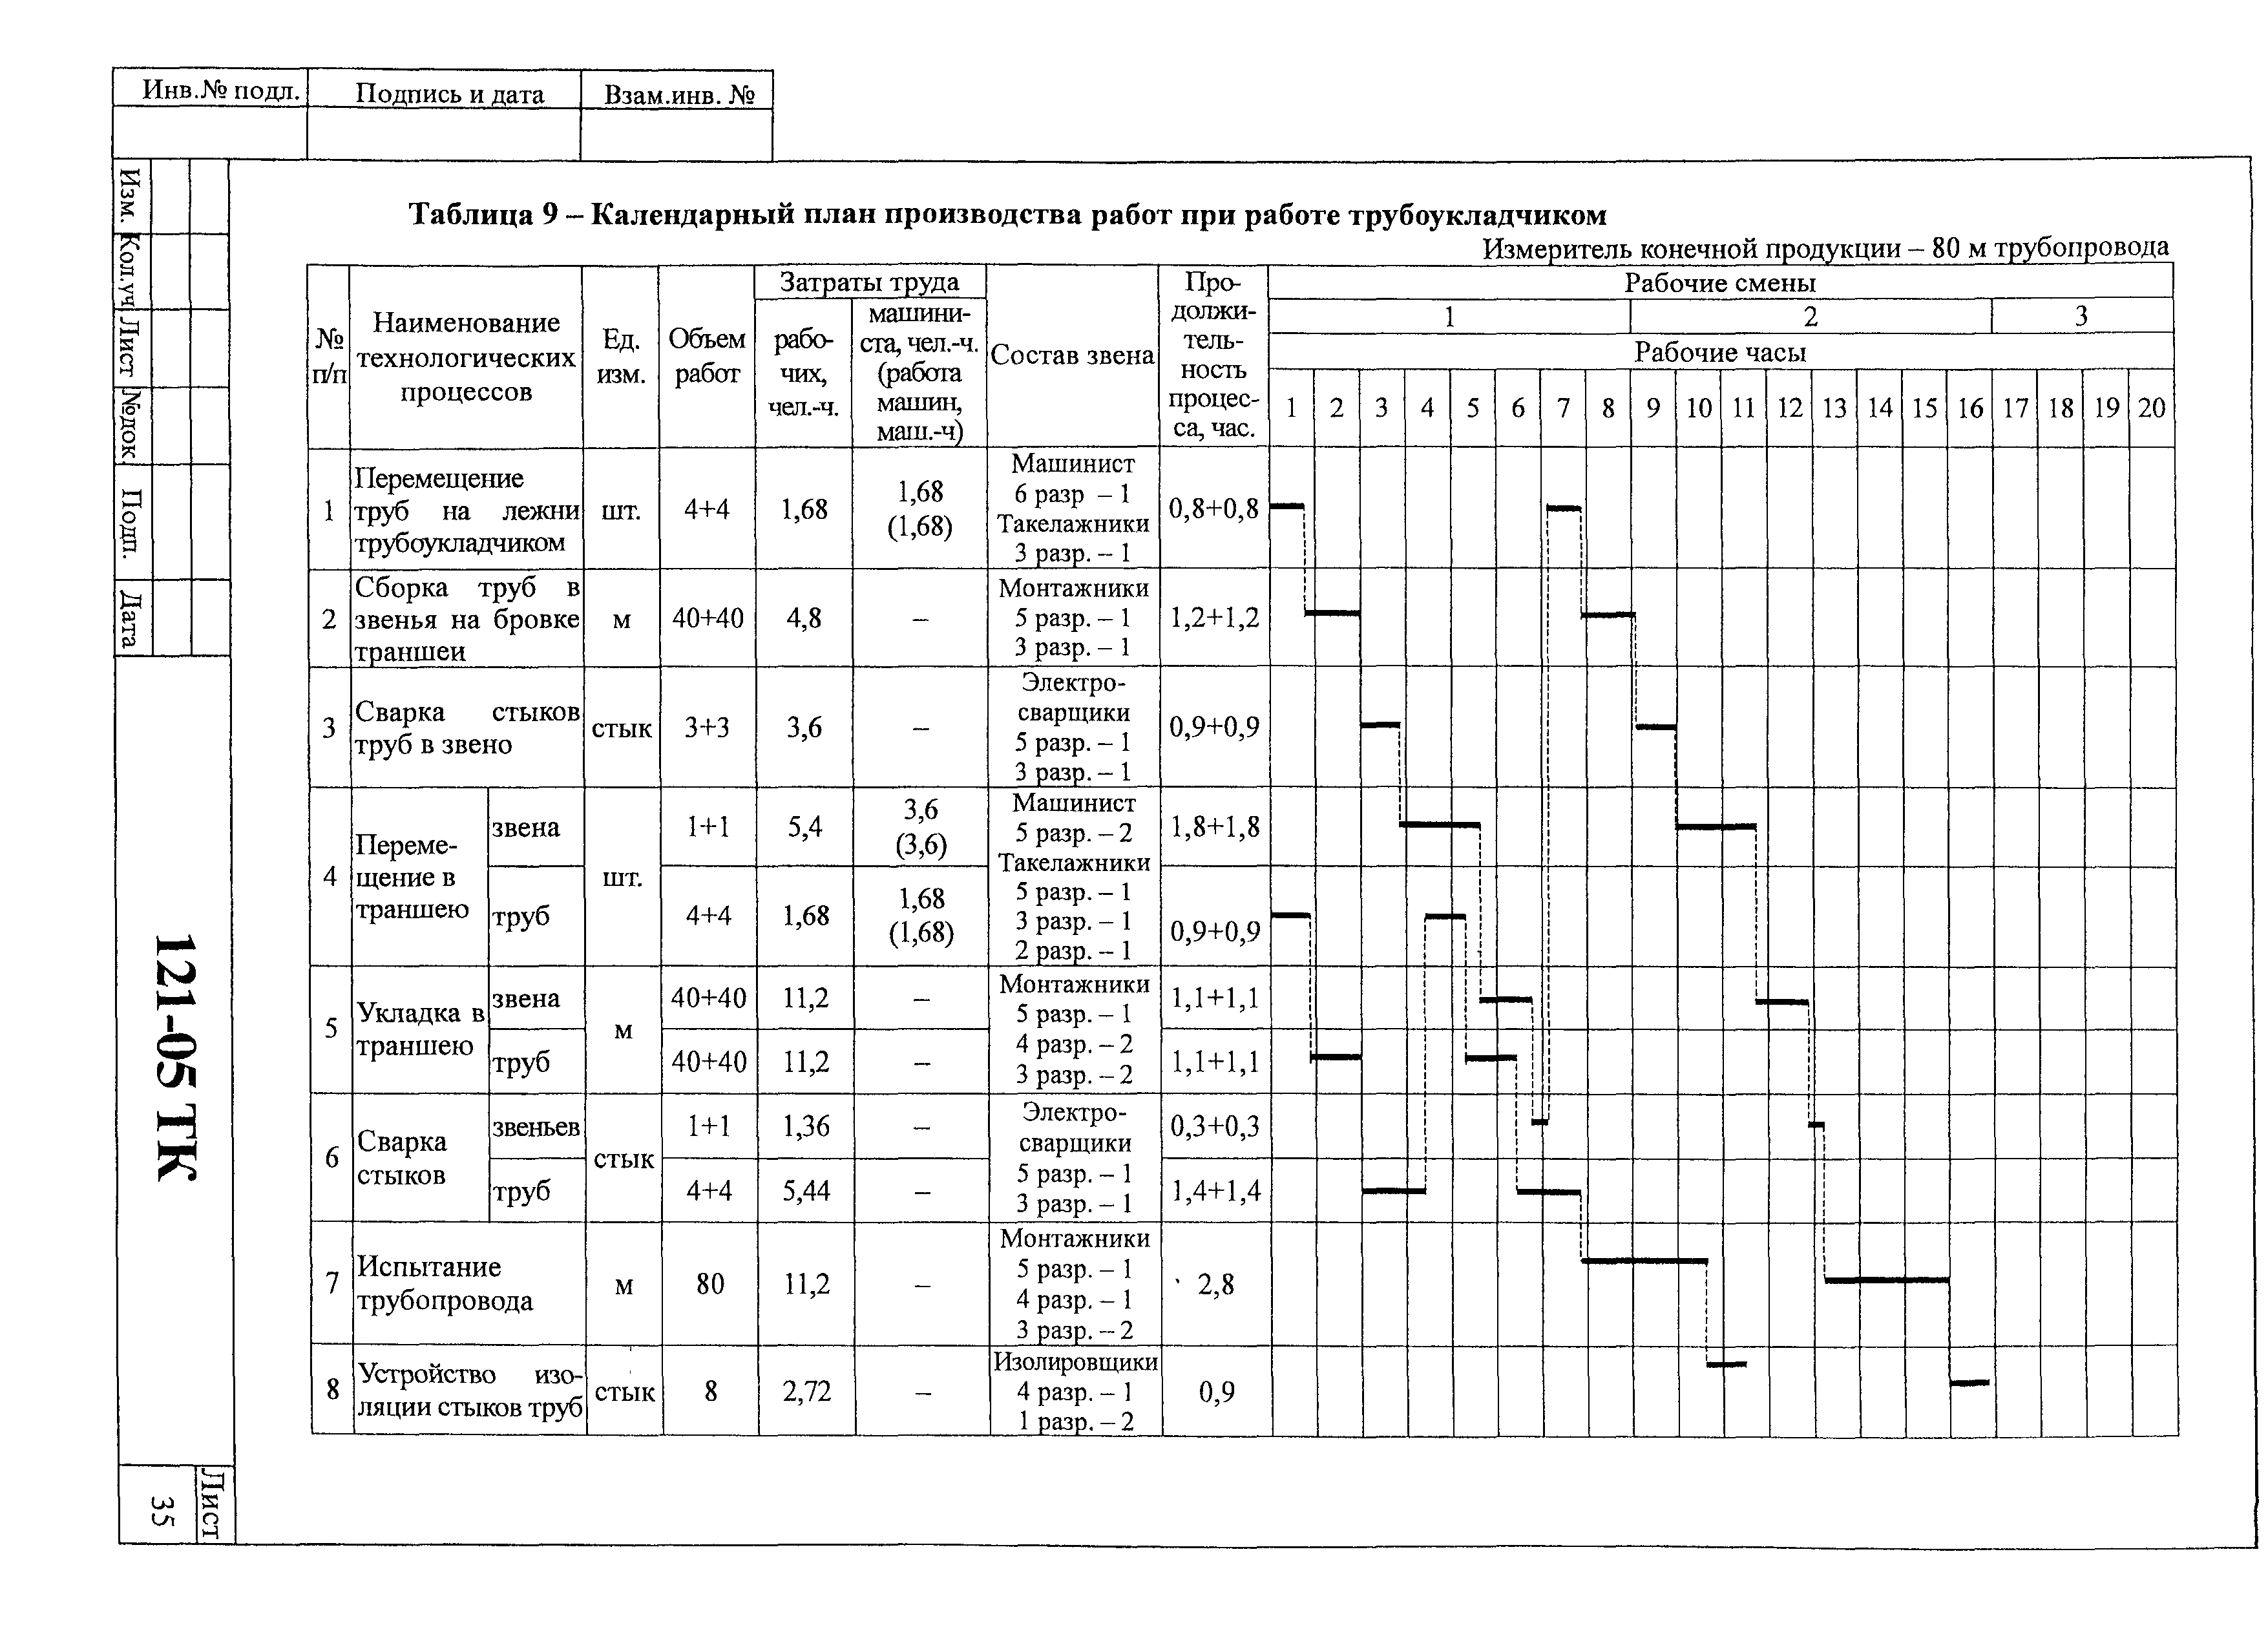 Технологическая карта 121-05 ТК